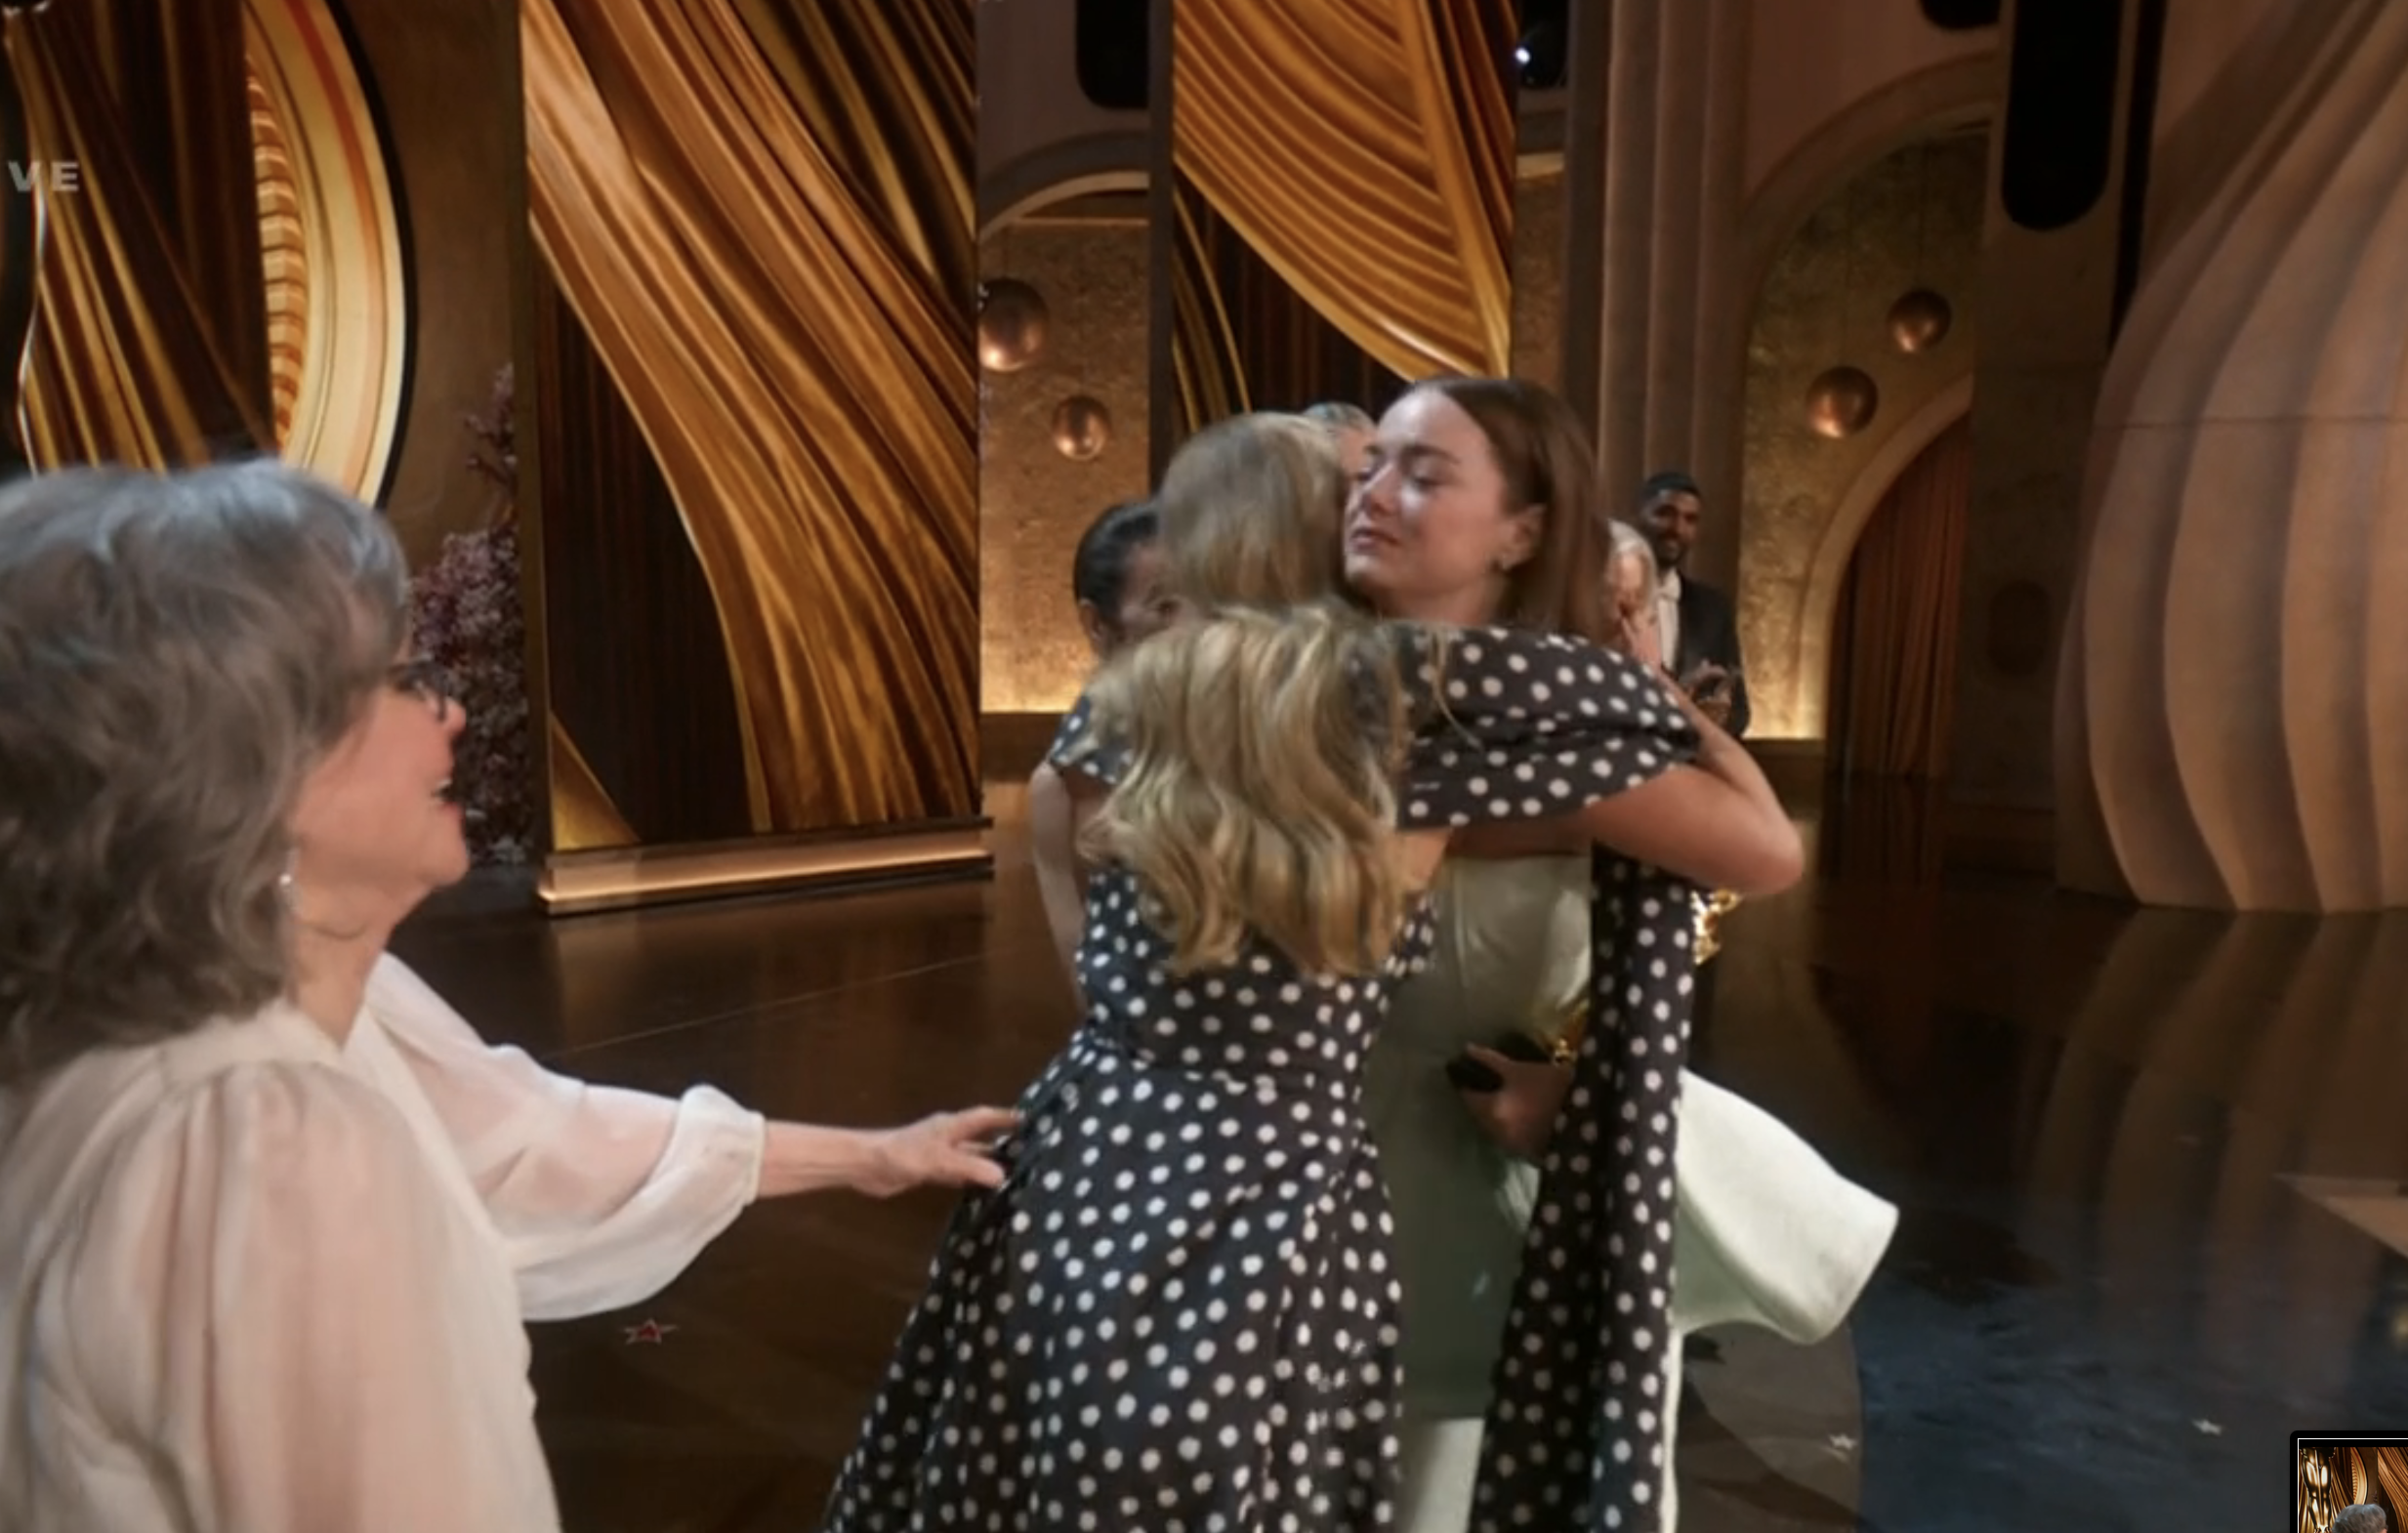 Jennifer and Emma hugging on stage